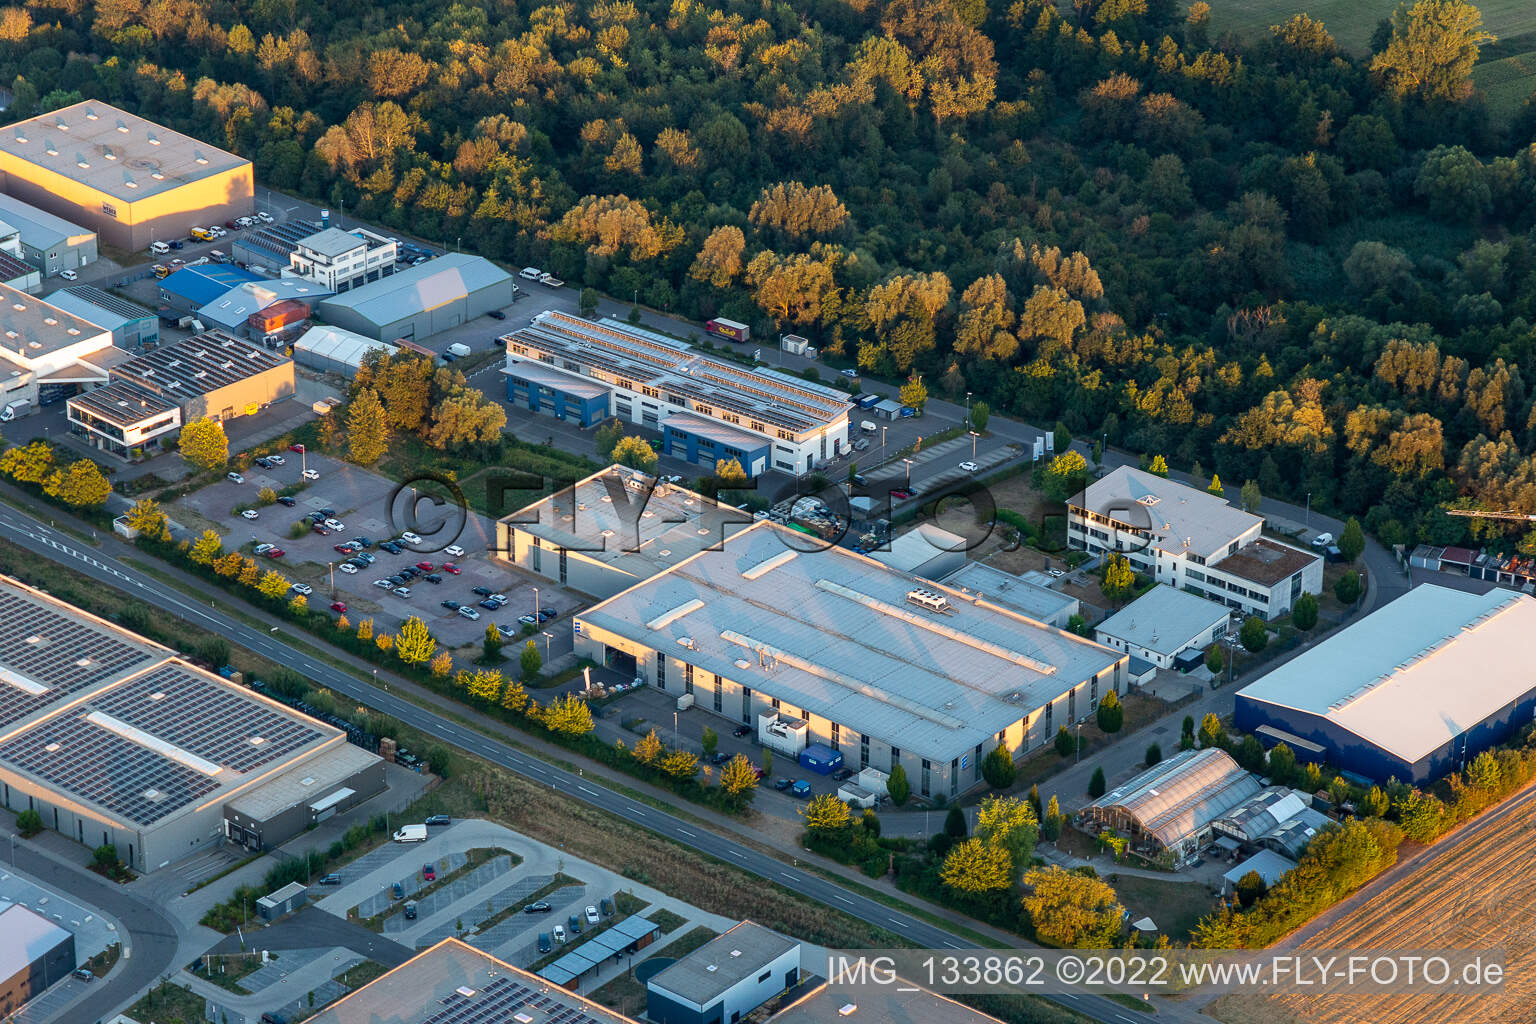 Luftbild von Eberspächer catem GmbH & Co. KG im Ortsteil Herxheim in Herxheim bei Landau/Pfalz im Bundesland Rheinland-Pfalz, Deutschland